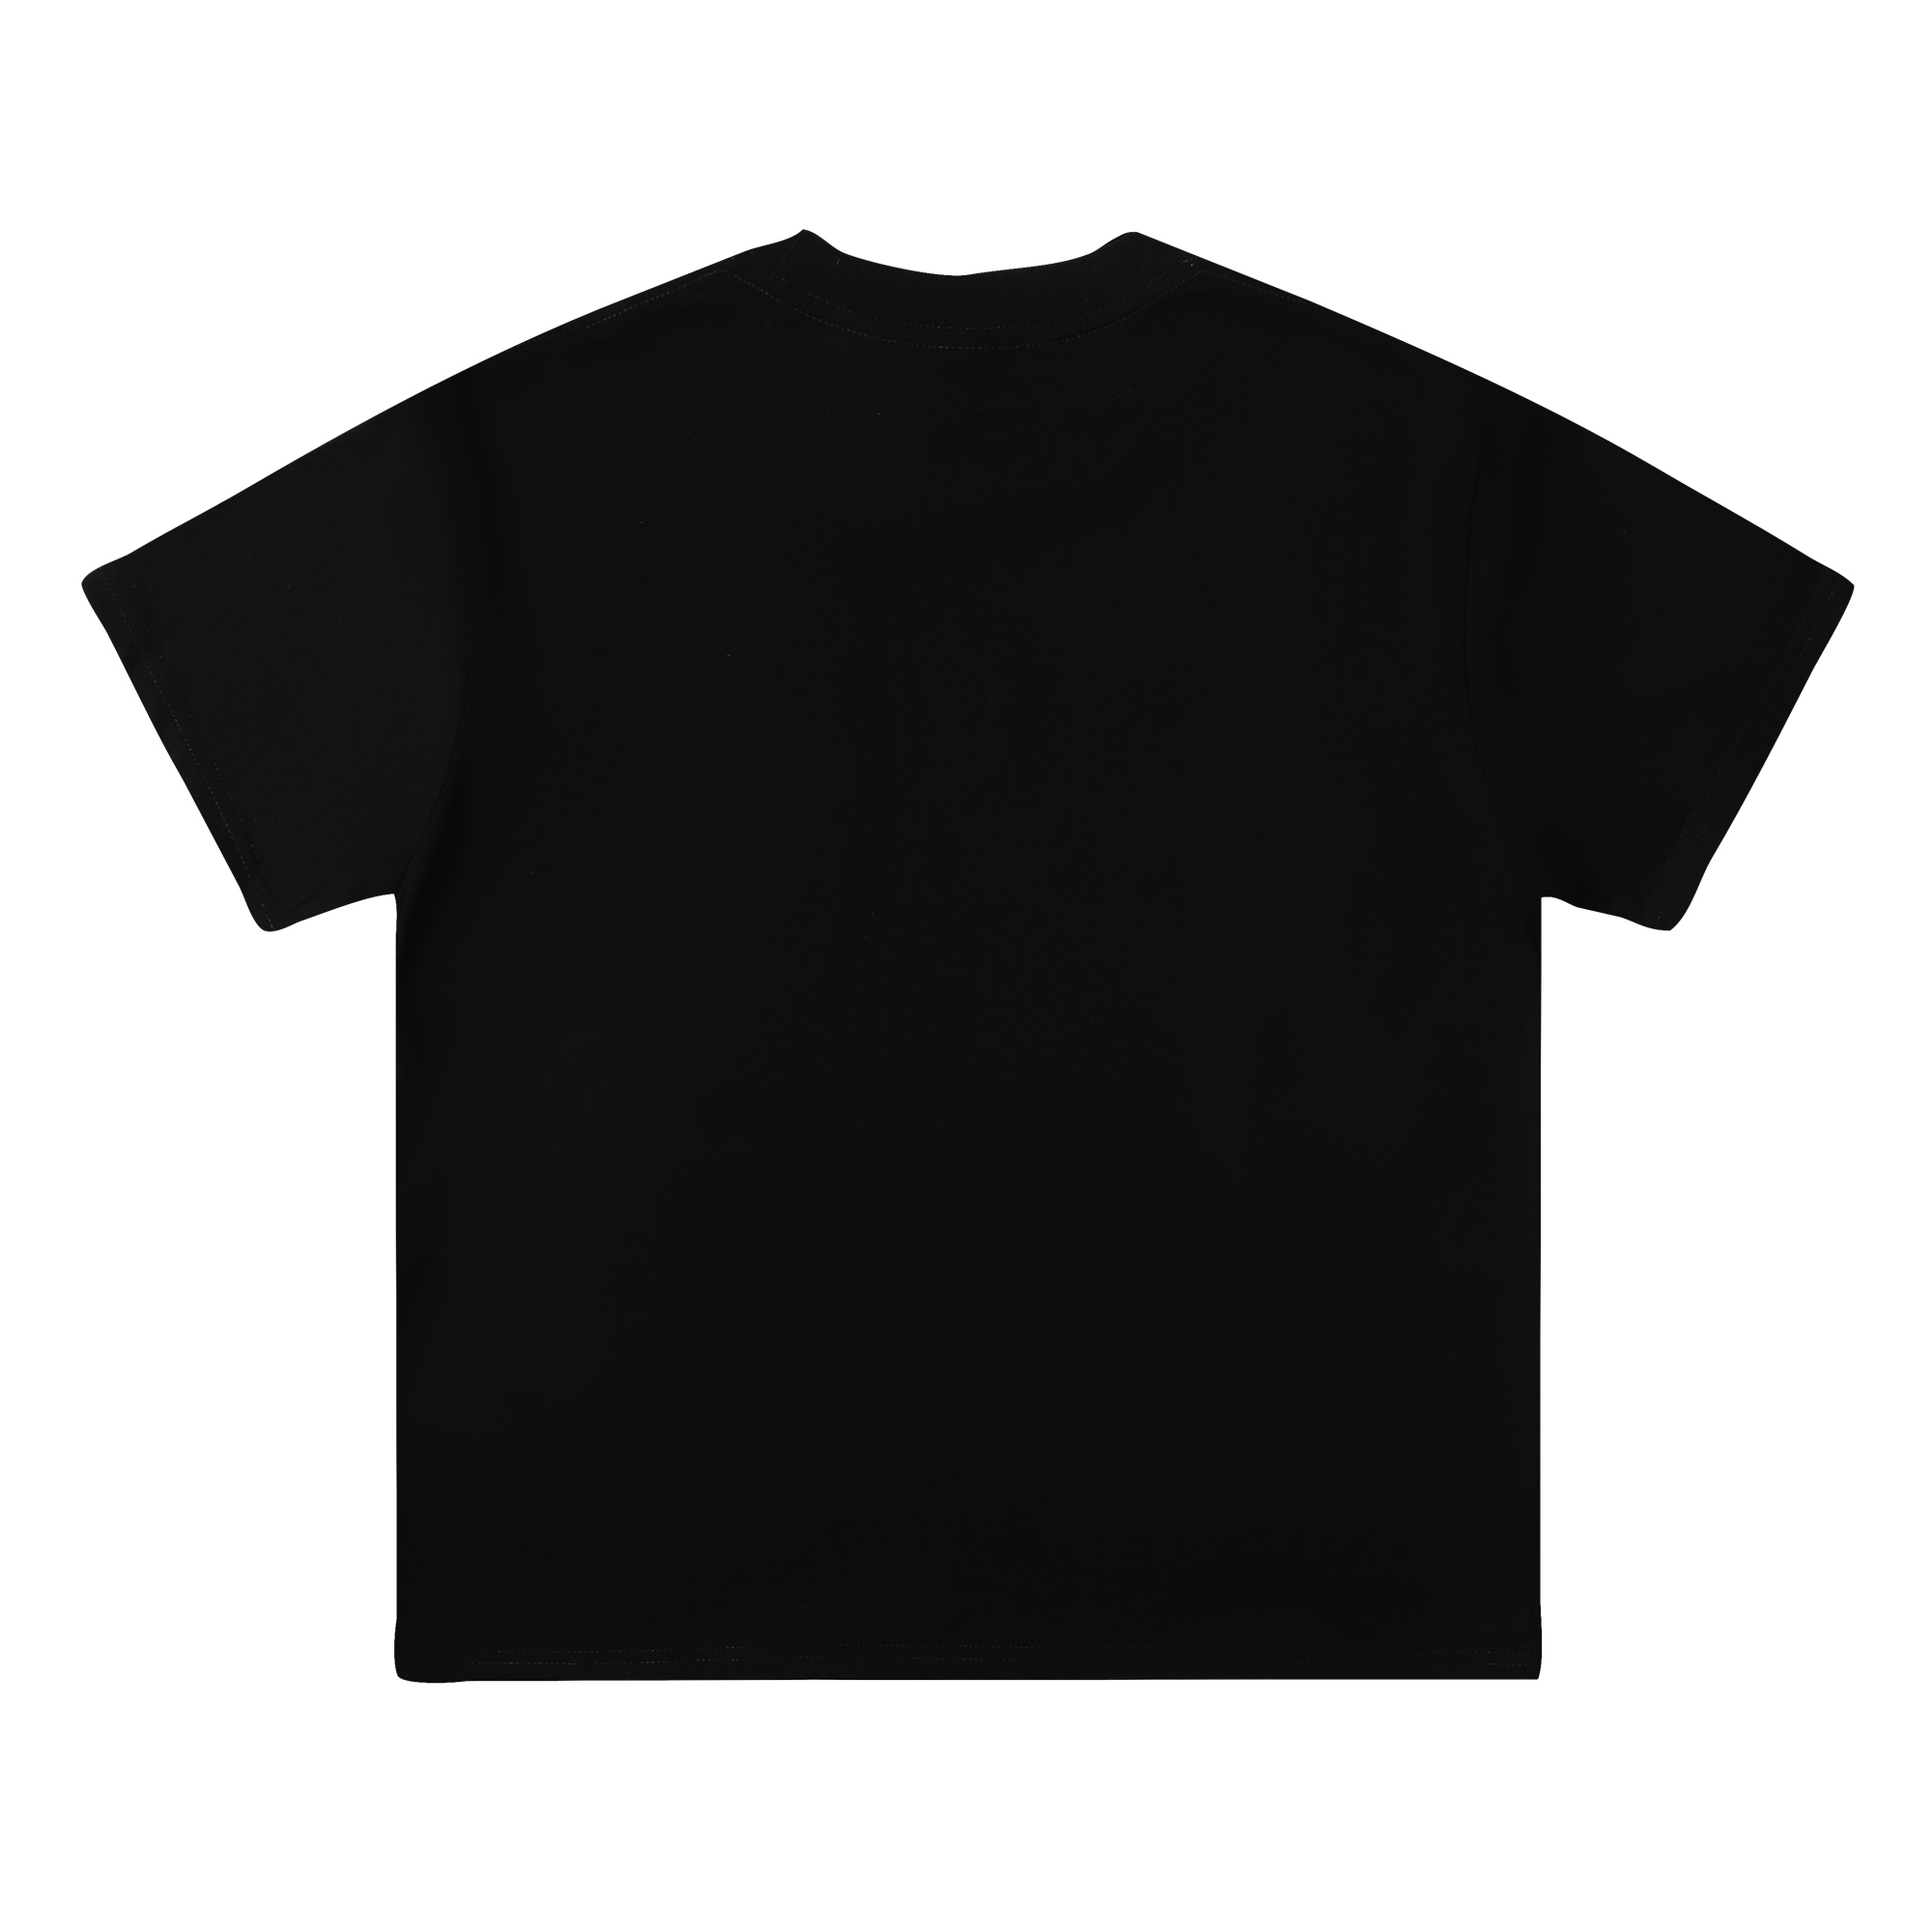 激安大特価最新作の ステューシー tシャツ タグスーパーコピー トップス 純綿 半袖 プリント ファッション 3色可選_3